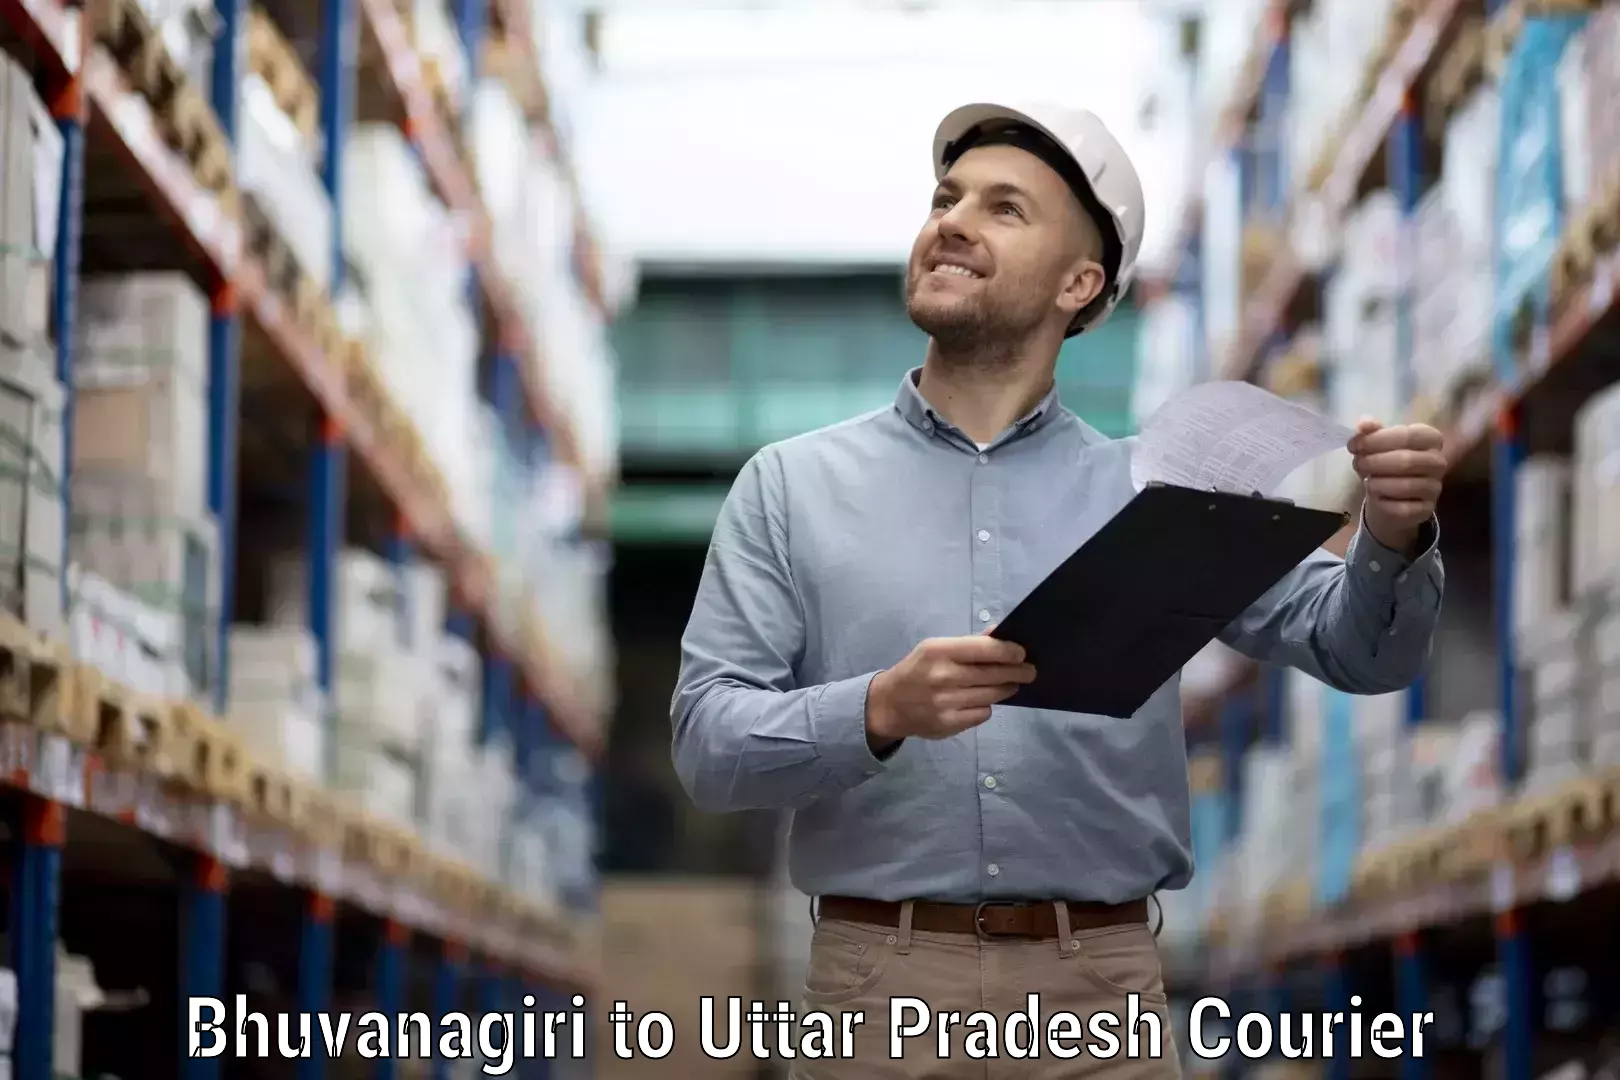 Courier service innovation Bhuvanagiri to Mawana